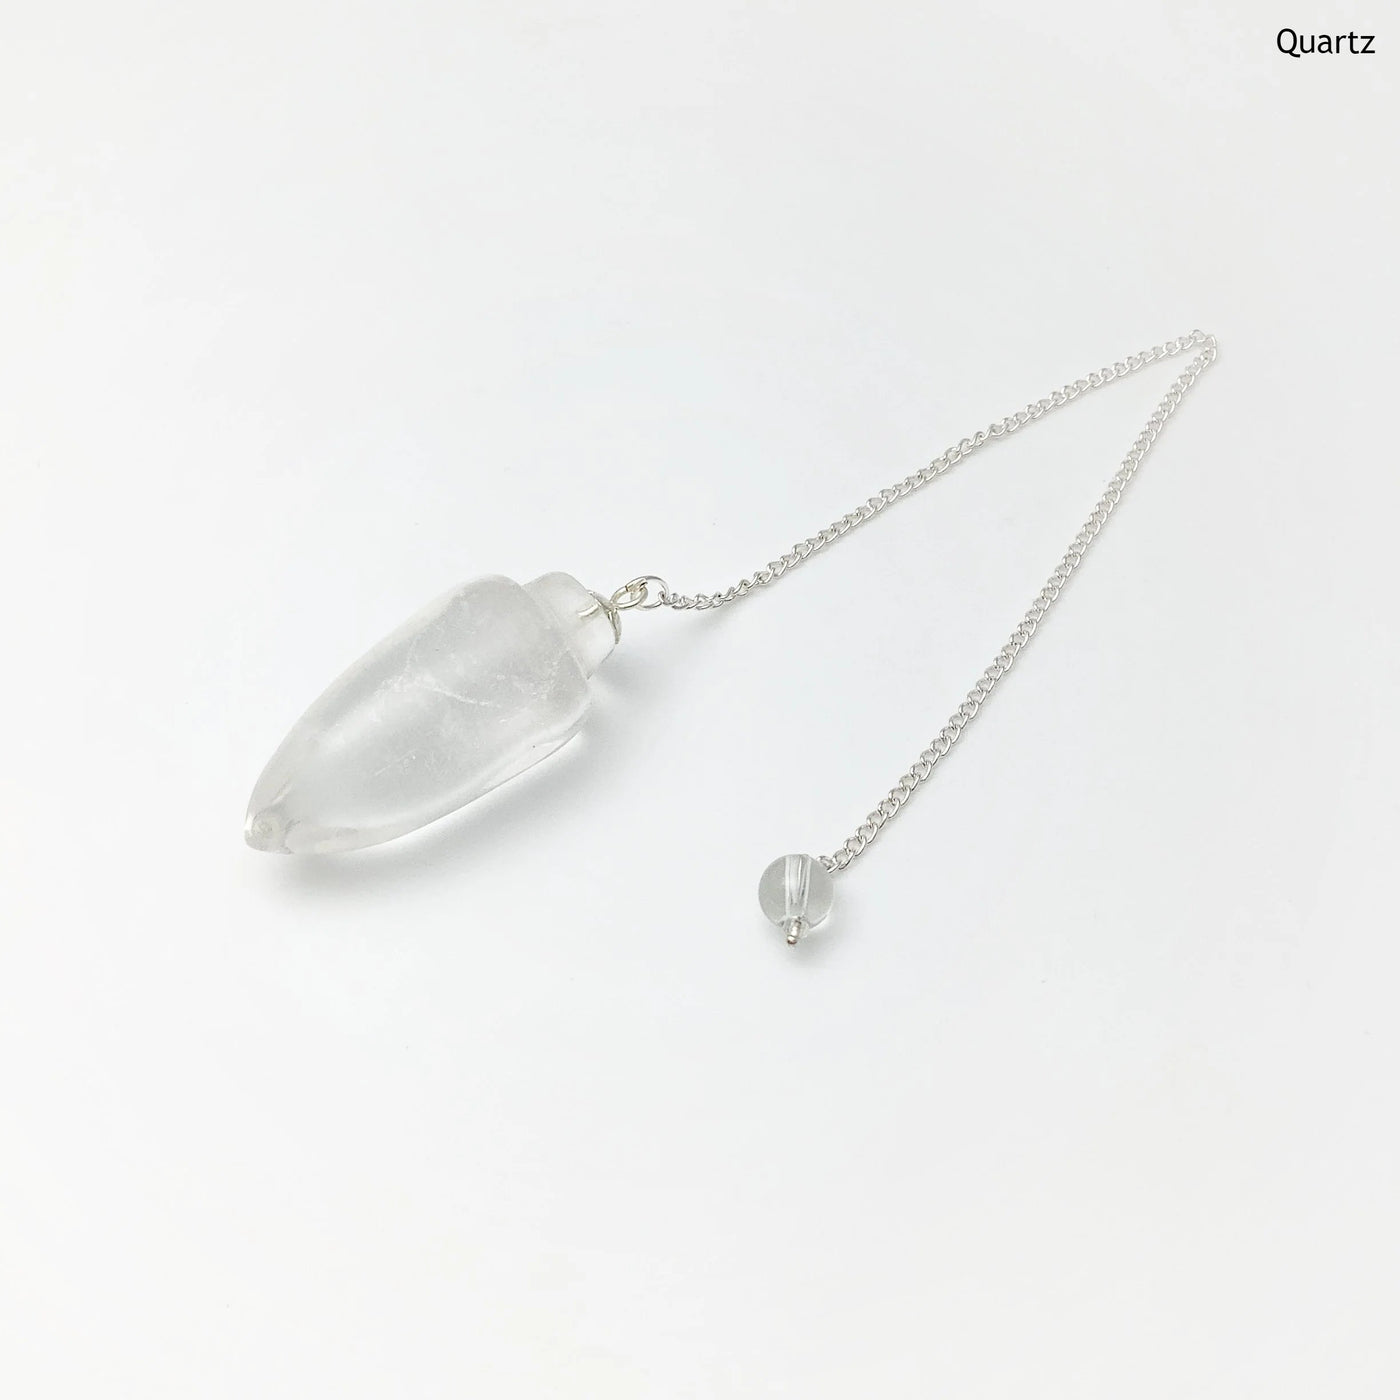 Polished Gemstone Pendulum with Quartz Bead